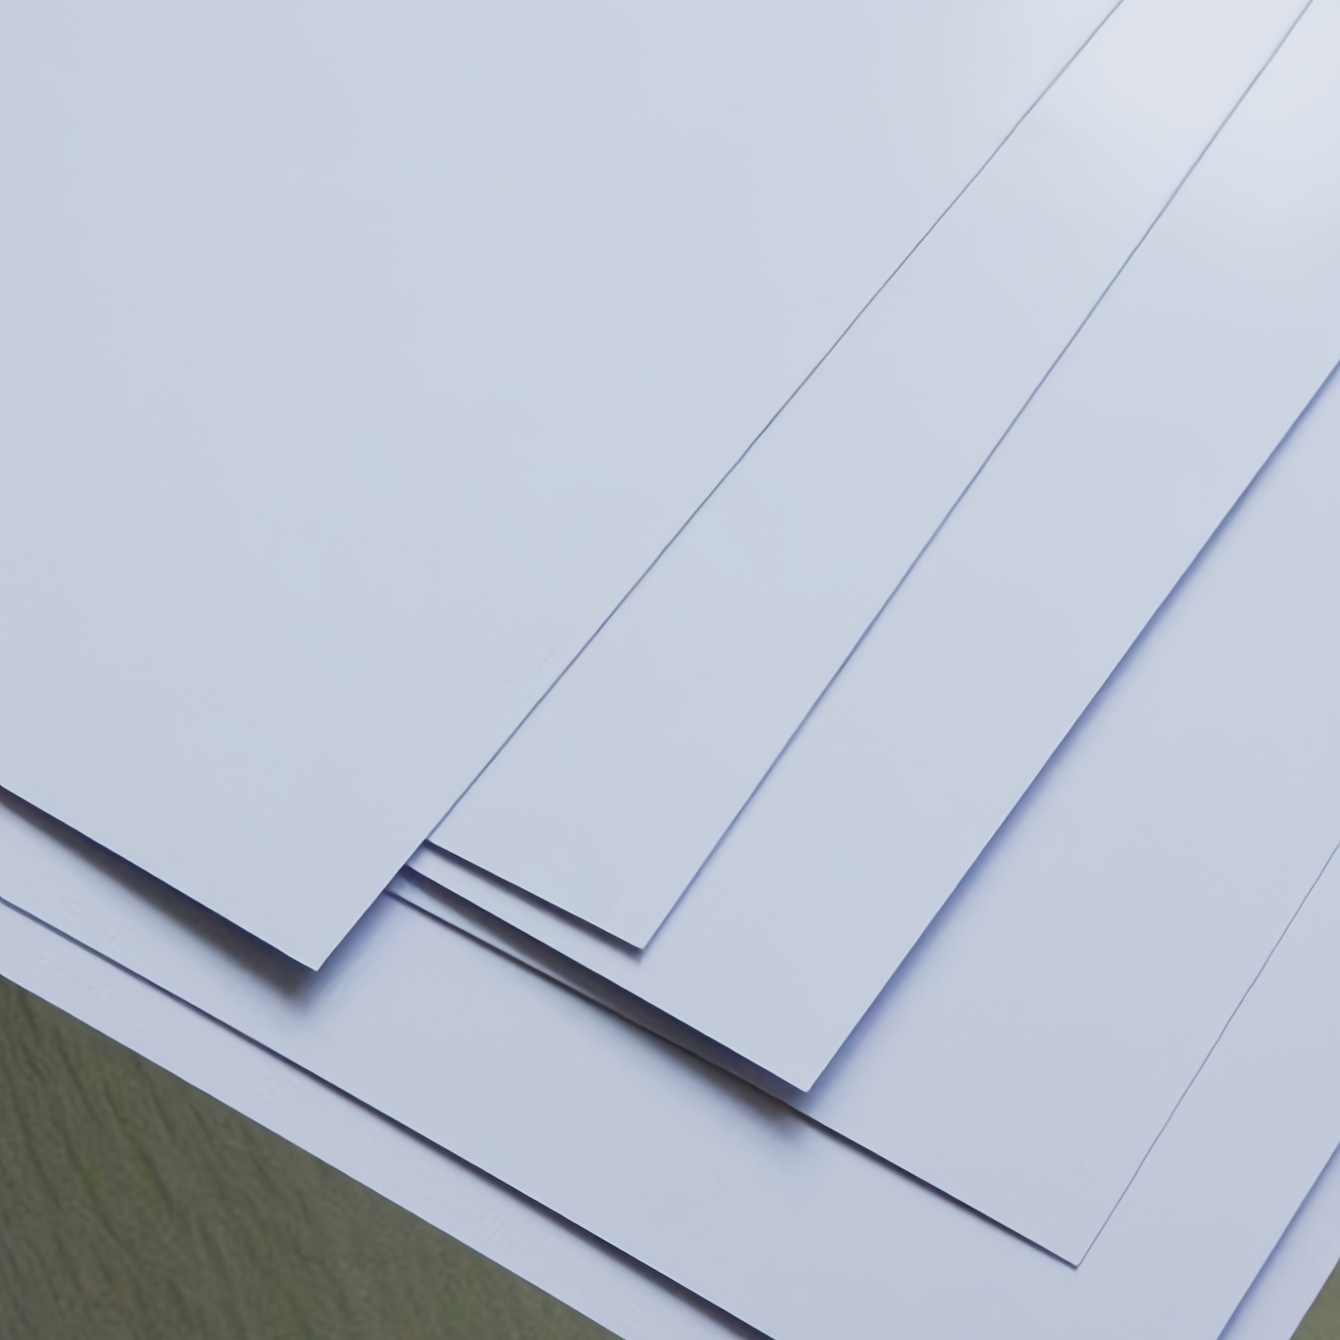 100 hojas de papel para sublimación 8 5 x 11 pulgadas 100 - Temu